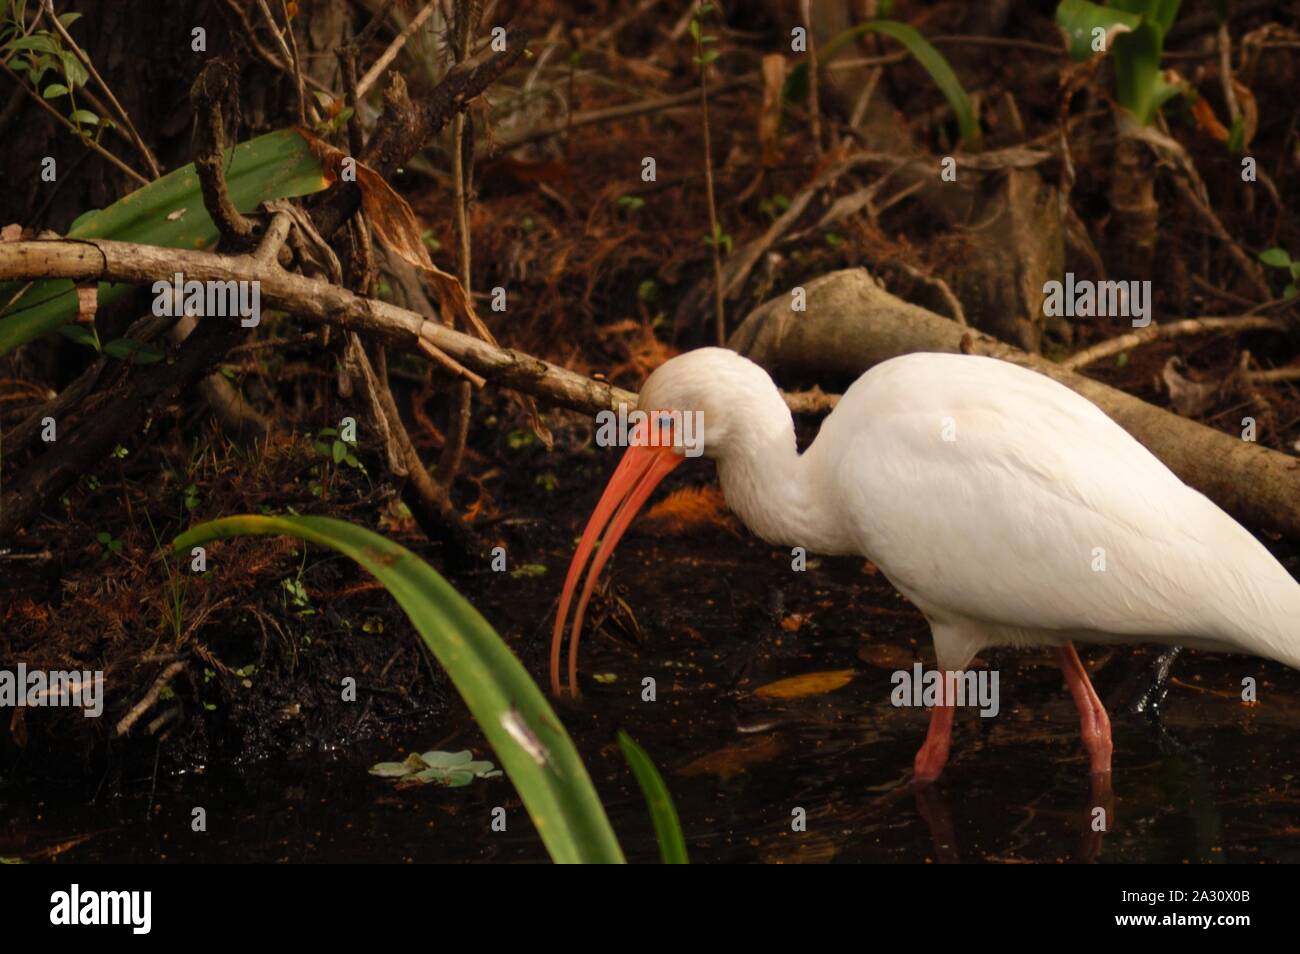 White ibis, Eudocimus albus, in a Florida marsh Stock Photo